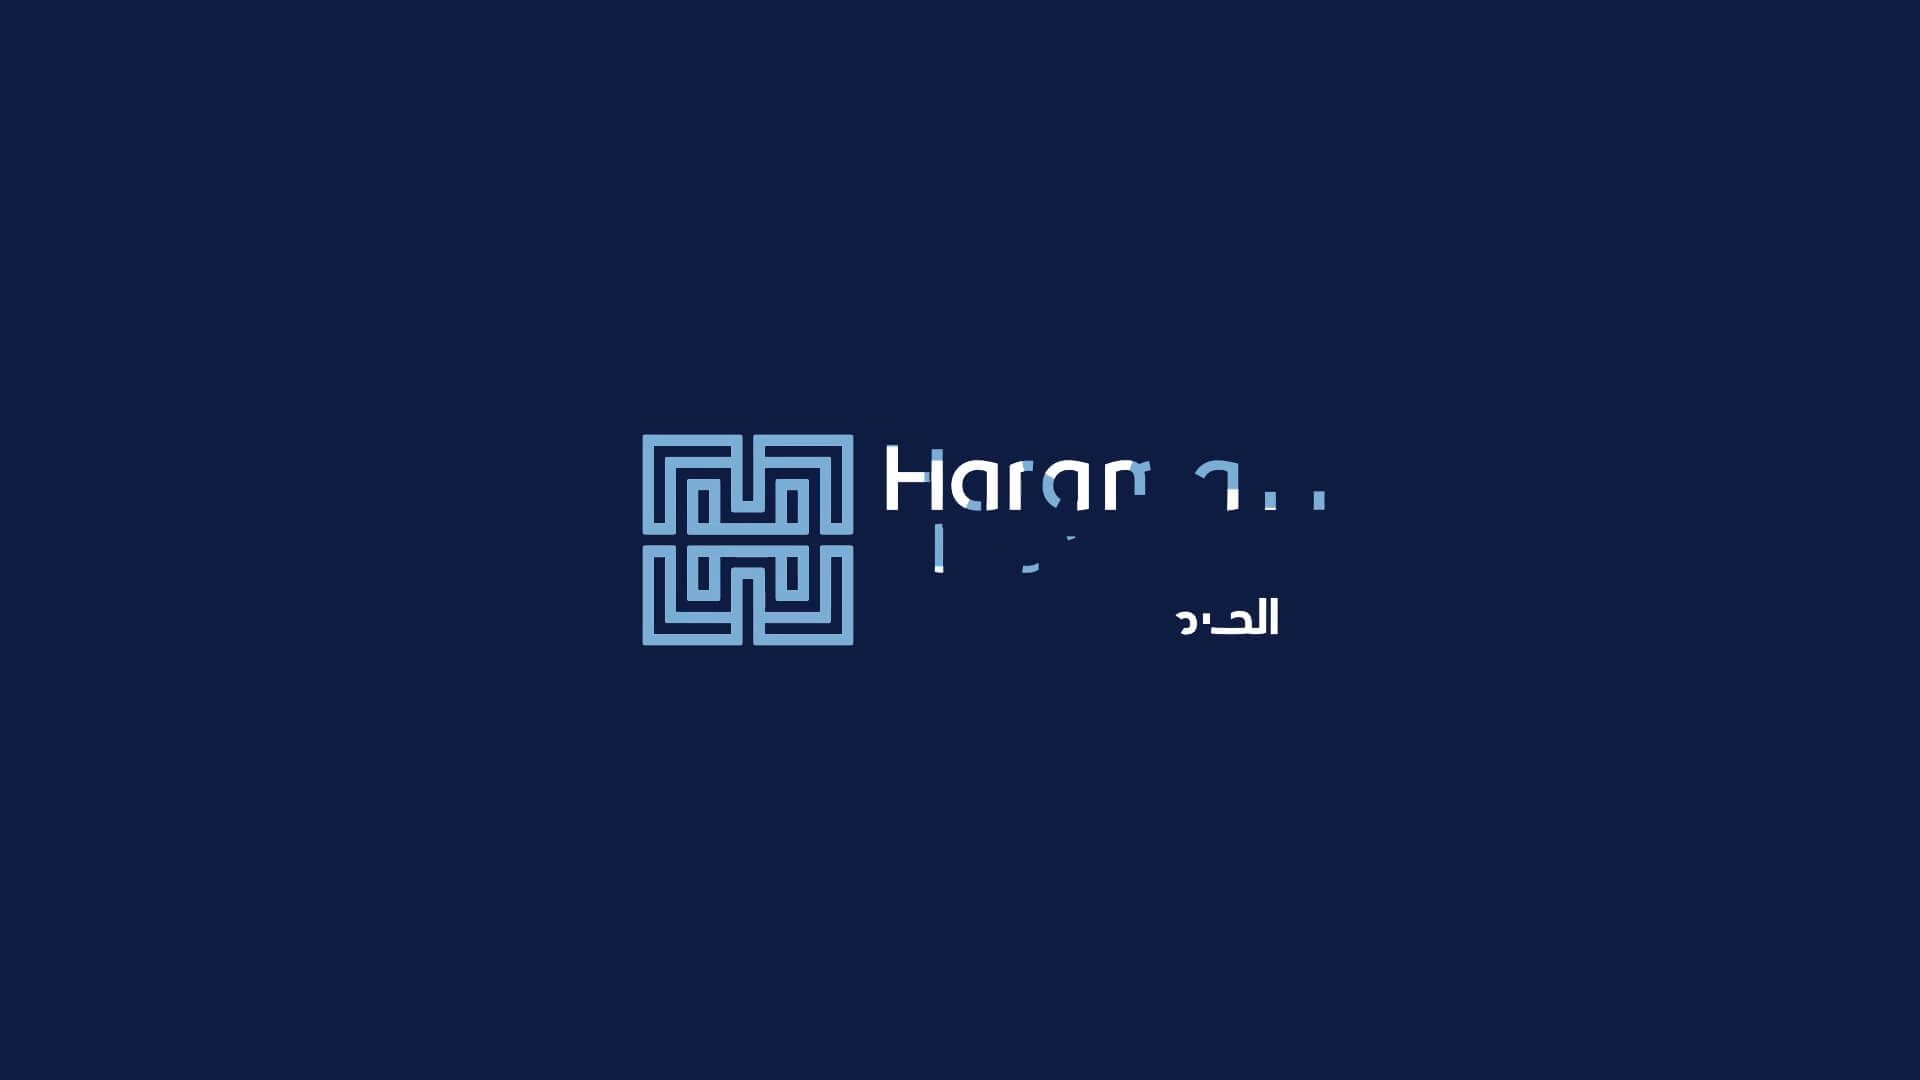 freelance-motion-designer-haramain-logo-animation-project-image-03